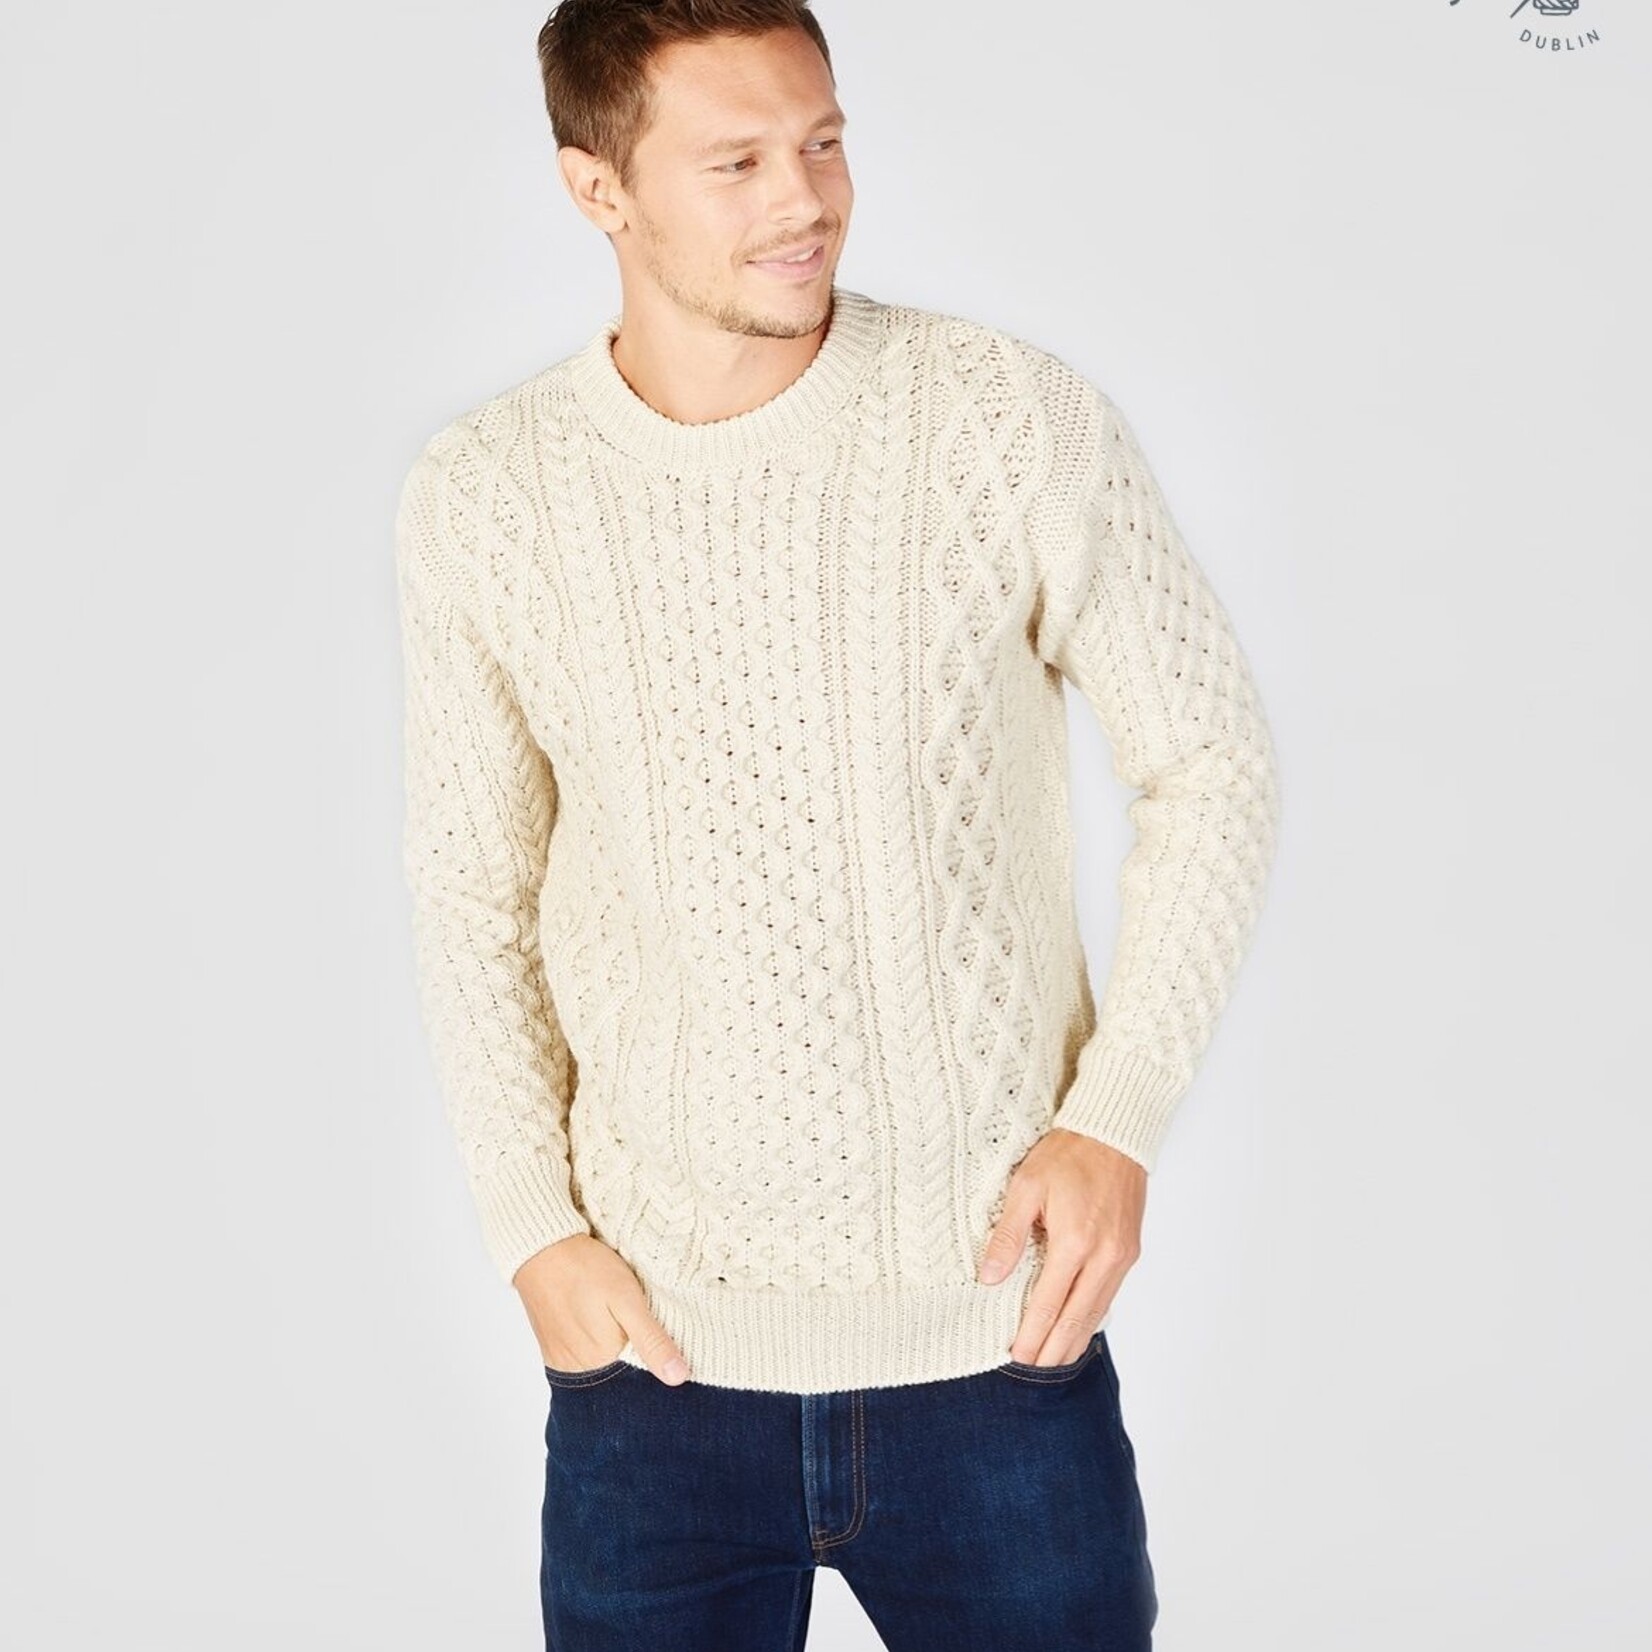 IrelandsEye Knitwear Natural Wool Sweater w/ Honeycomb Stitch